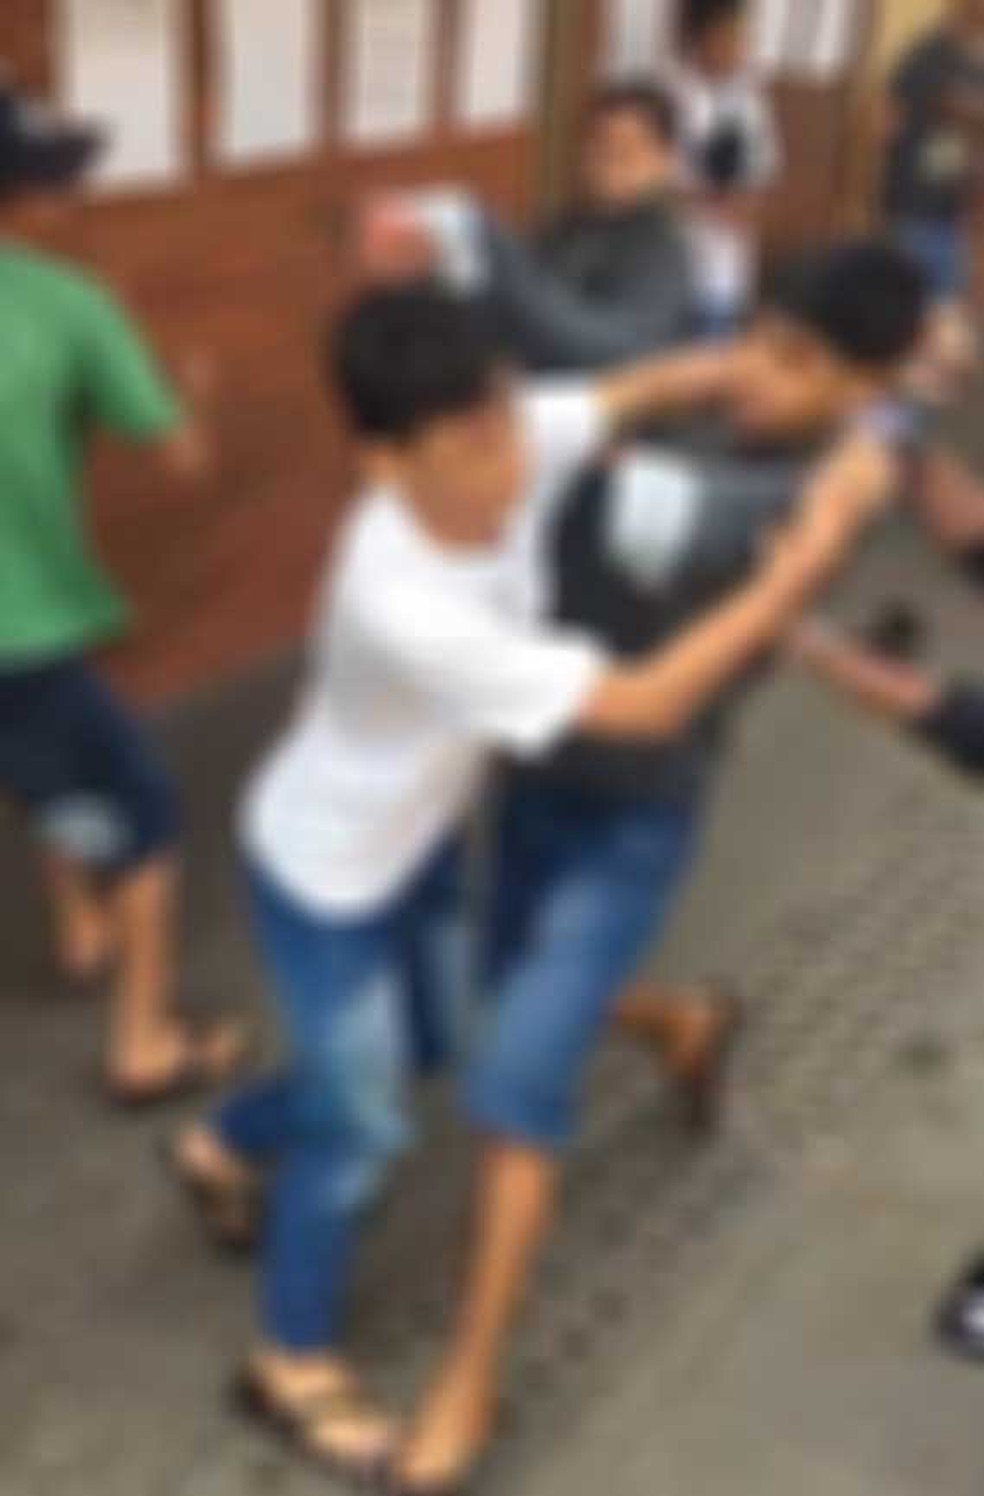 Jovens tentam invadir carreta com crianças e causam briga generalizada com  os pais - Fotos - R7 Minas Gerais